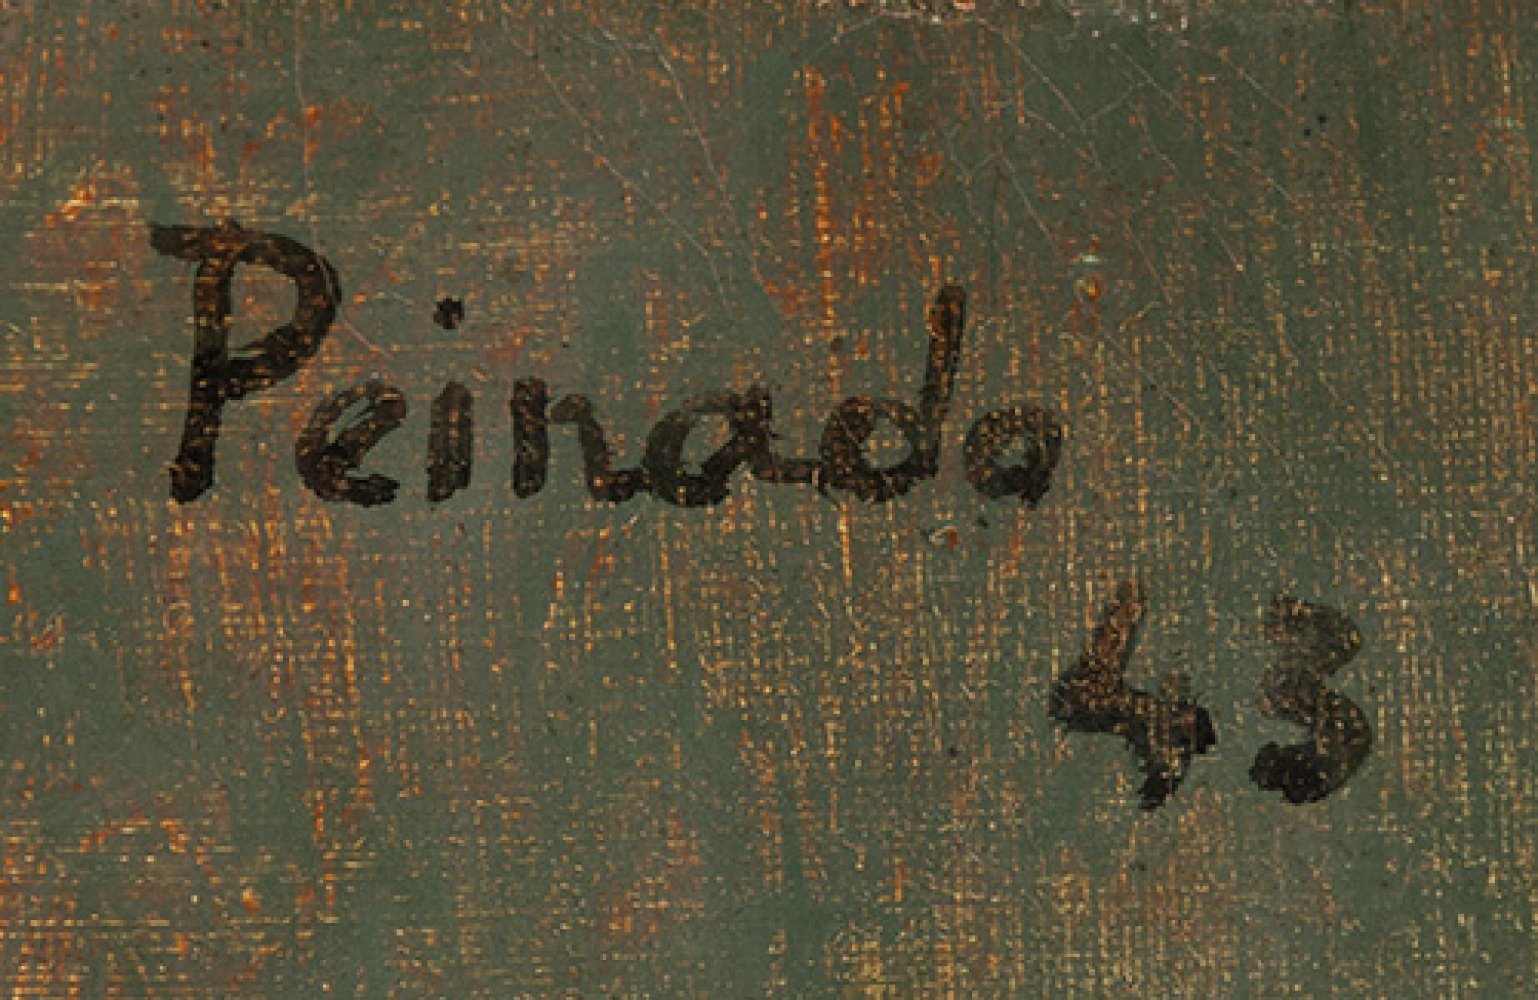 JOAQUÍN PEINADO (Ronda, Malaga, 1898 - Paris, 1975)."Composition with a Pipe", 1943.Oil on canvas. - Image 3 of 5